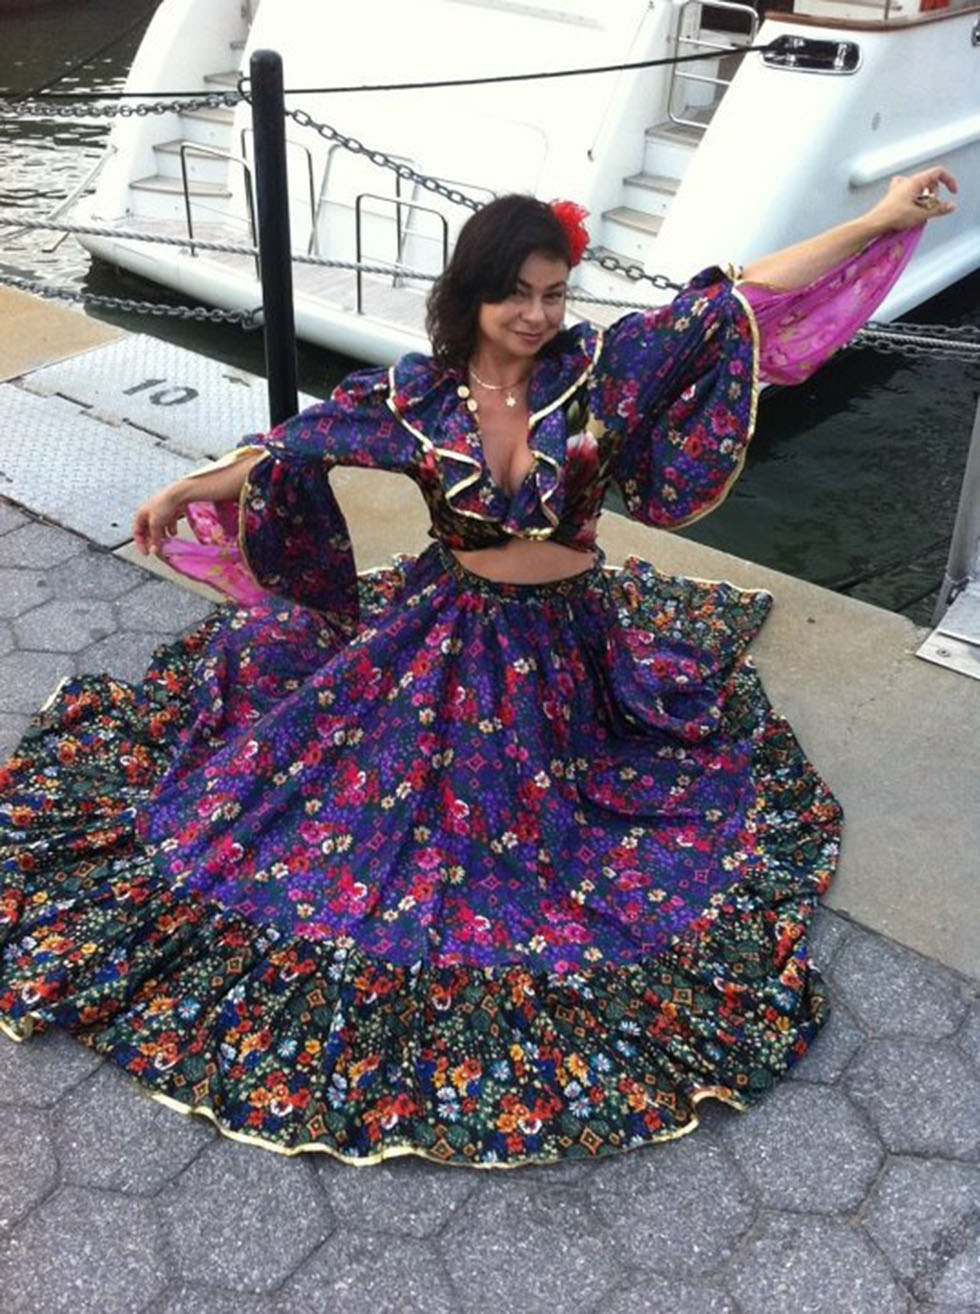 Sunday August 5th 2012, Russian-Gypsy style party on the boat in New York City, 08-05-2012, Elina Karokhina (balalaika)